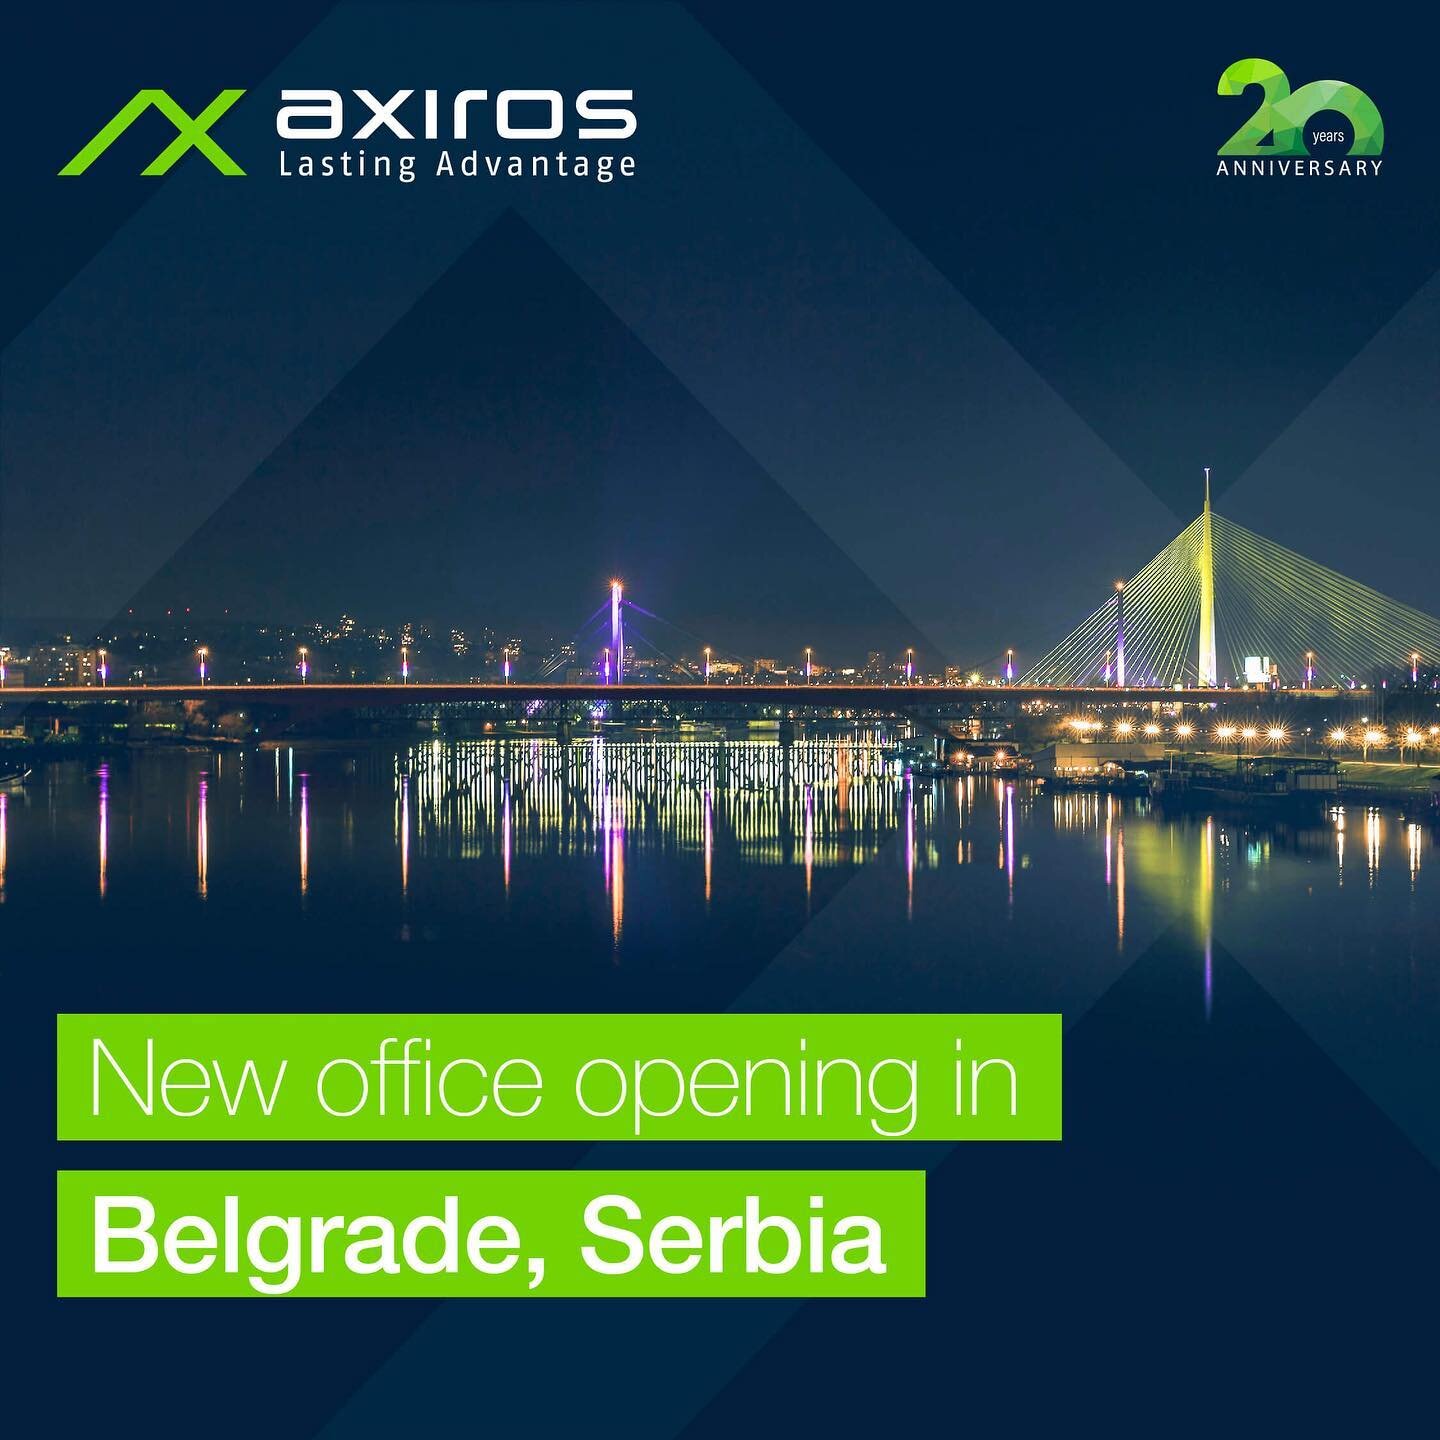 [Axiros News] Axiros wächst wieder! 🌍🚀

Axiros hat ein neues Büro in der serbischen Hauptstadt Belgrad eröffnet, das Teil der weltweiten Expansion des Unternehmens ist. ➡️ Sie können die vollständige Ankündigung lesen - Link in der Biografie!

Wir möchten uns bei allen